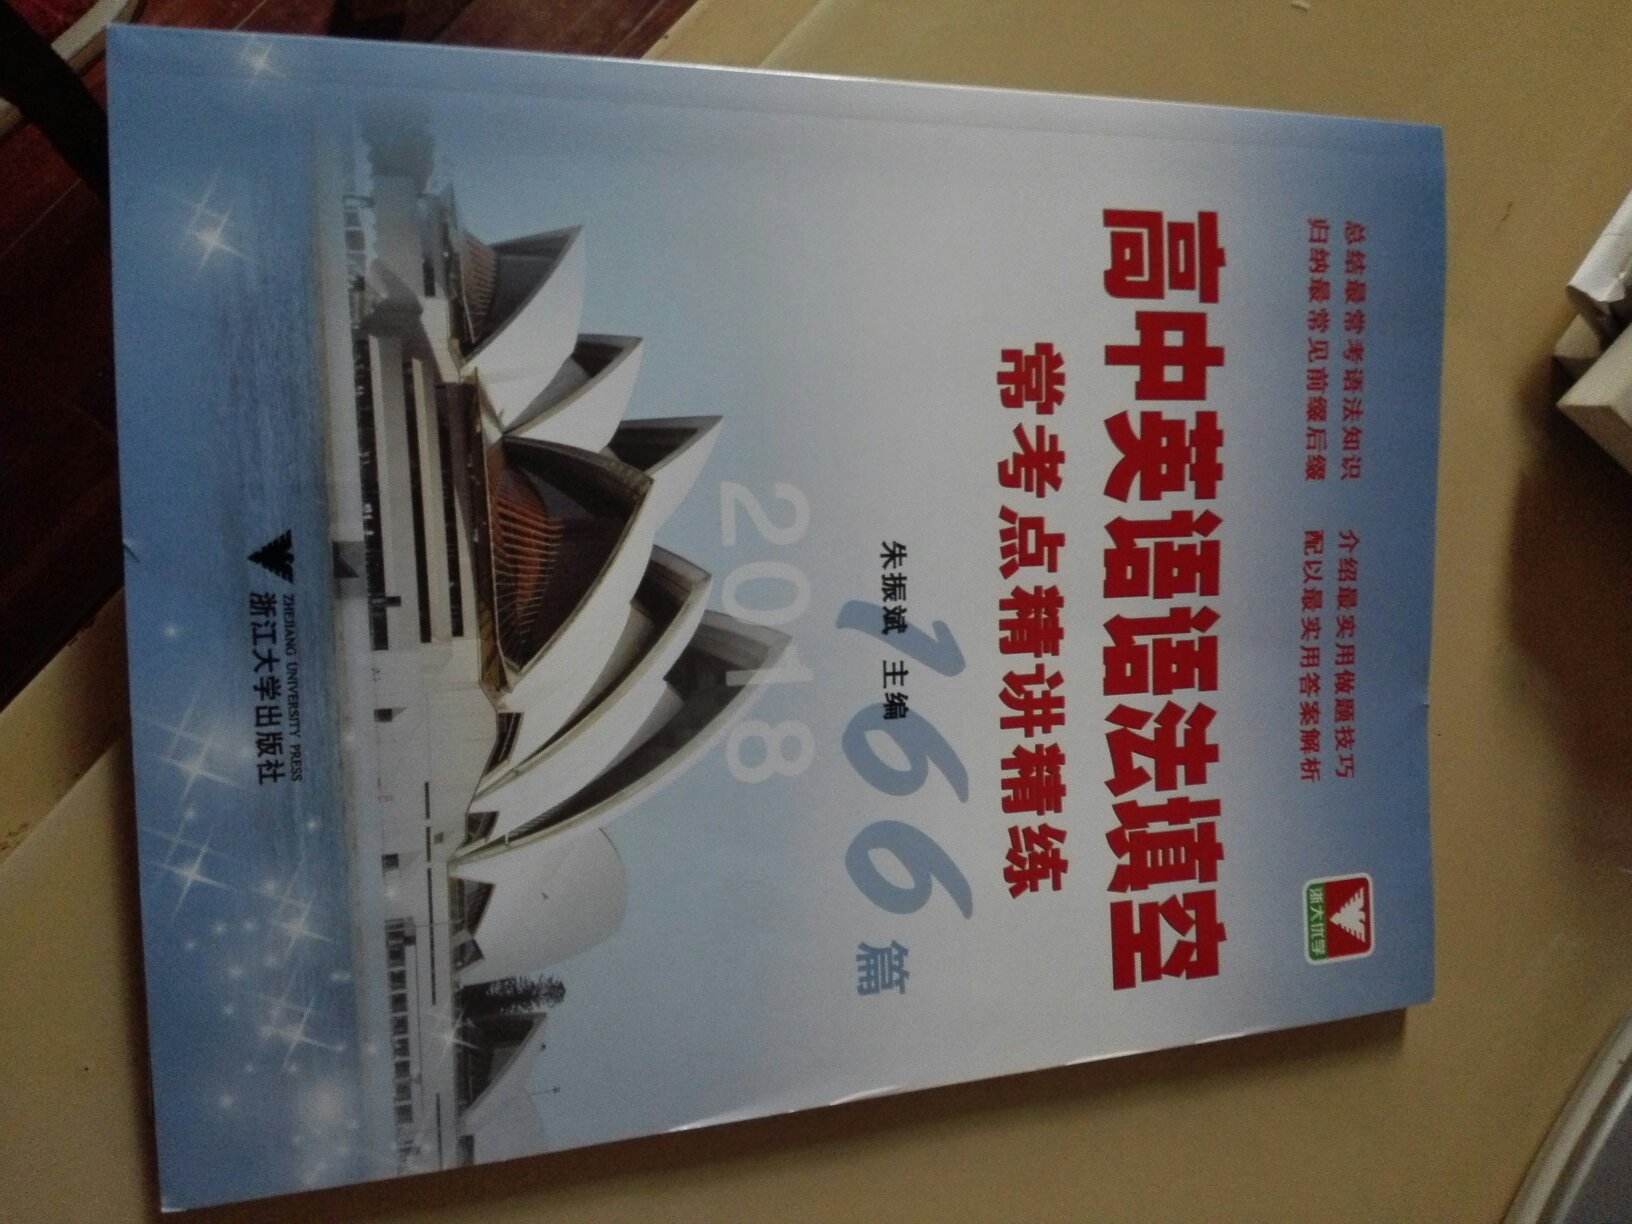 初步翻看了下，书很不错，浙江大学出版社的书总体质量还是可以的。